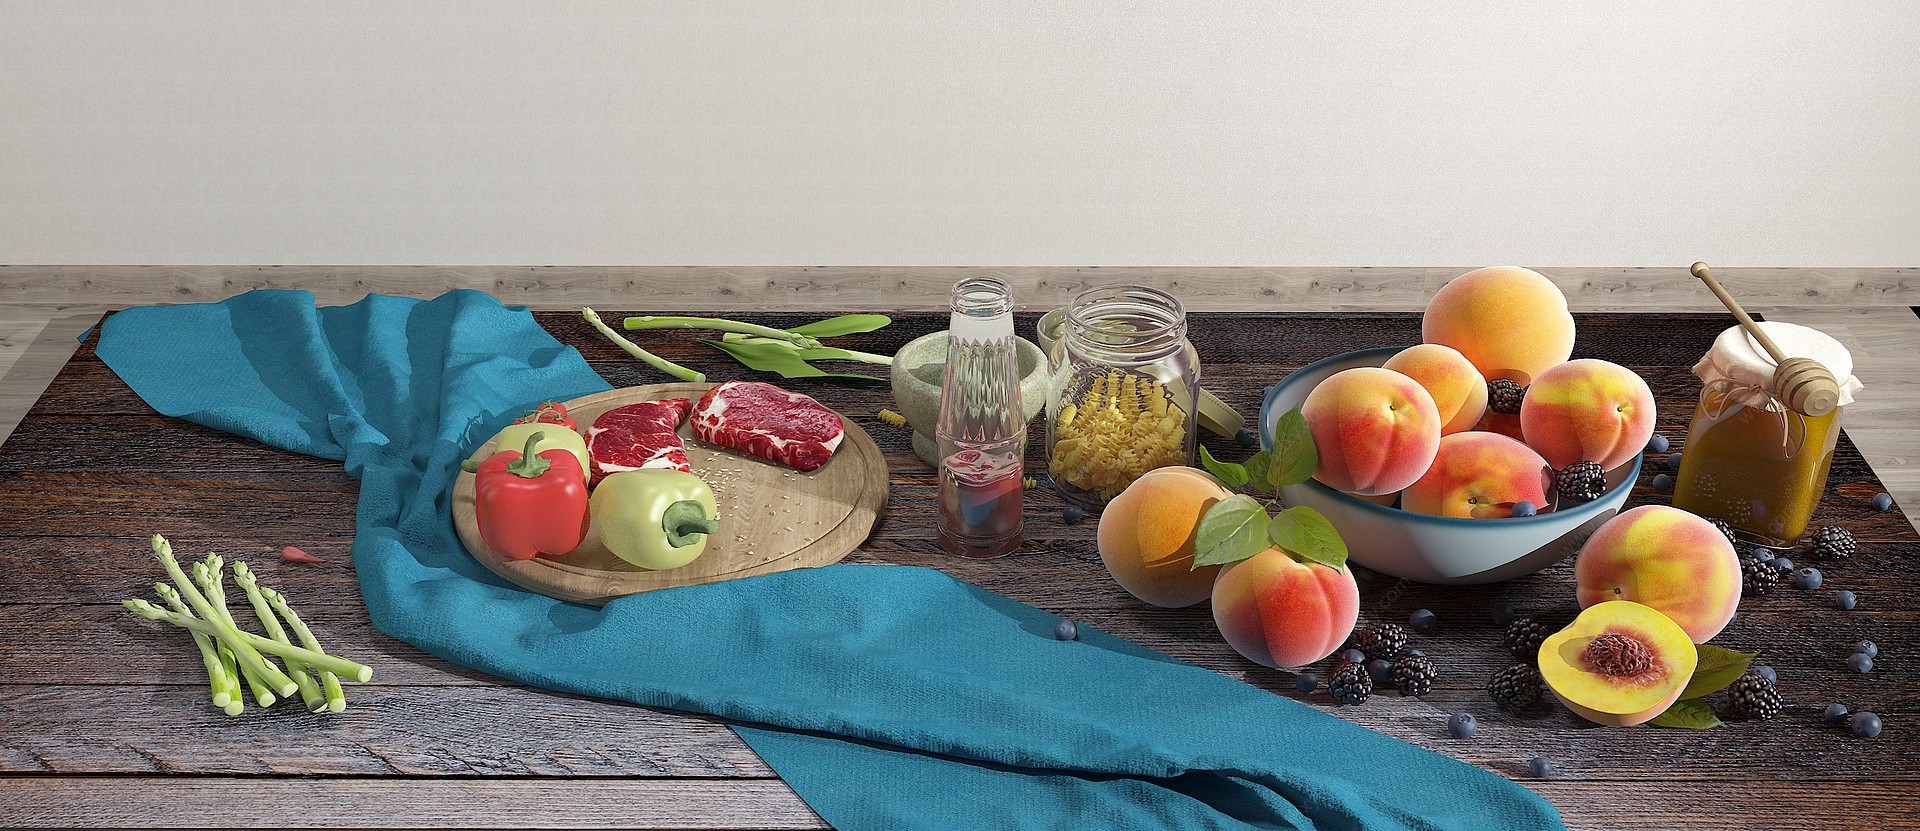 水果蔬菜厨房餐具3D模型